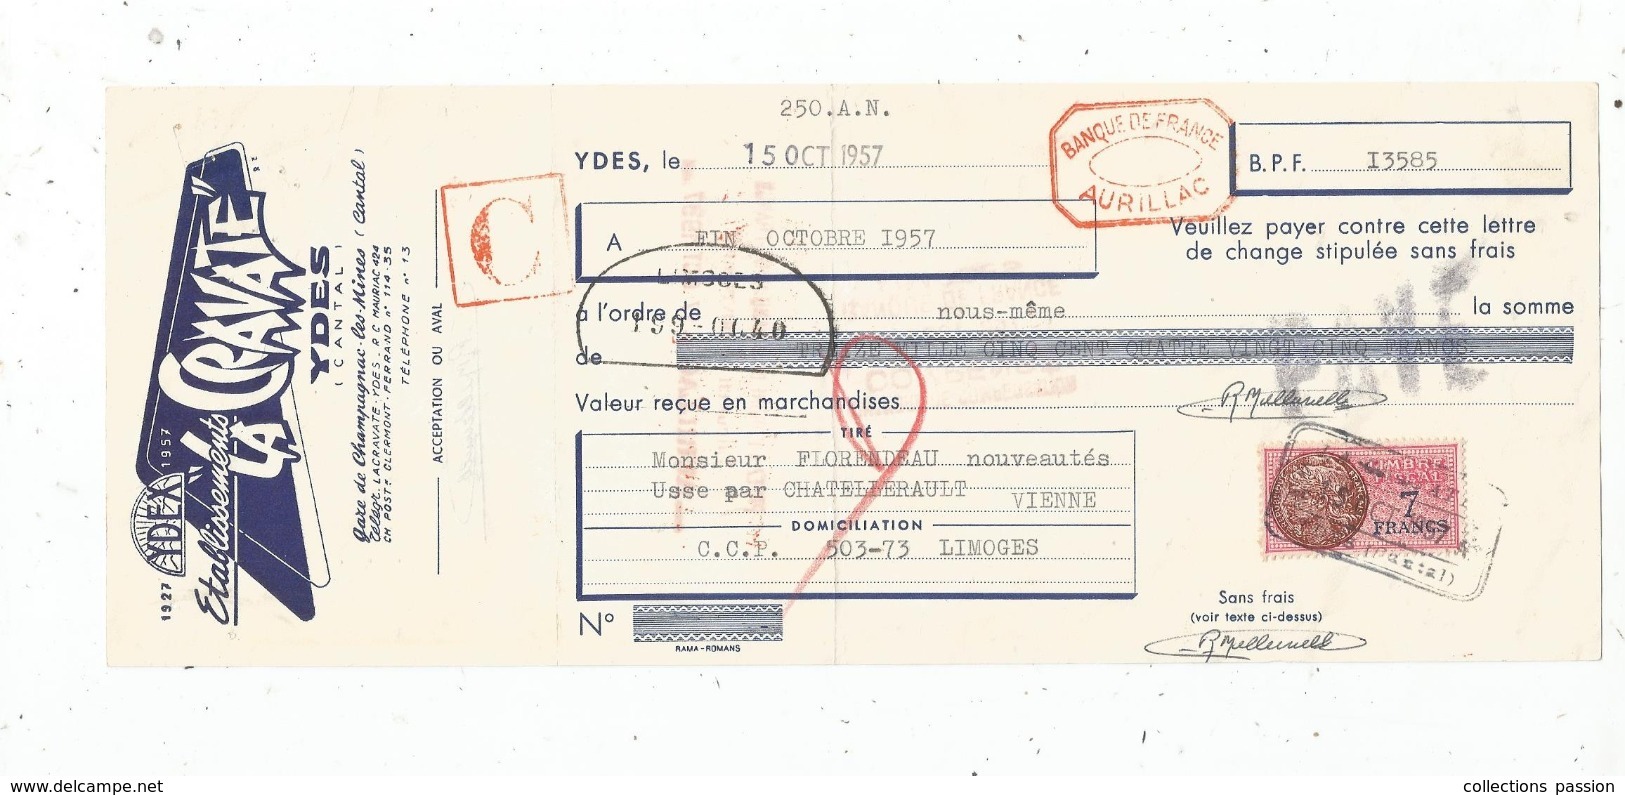 Lettre De Change , 1957 , Ets LA CRAVATE , YDES , CANTAL , Timbré , 2 Scans ,  Frais Fr : 1.55 Euros - Wechsel